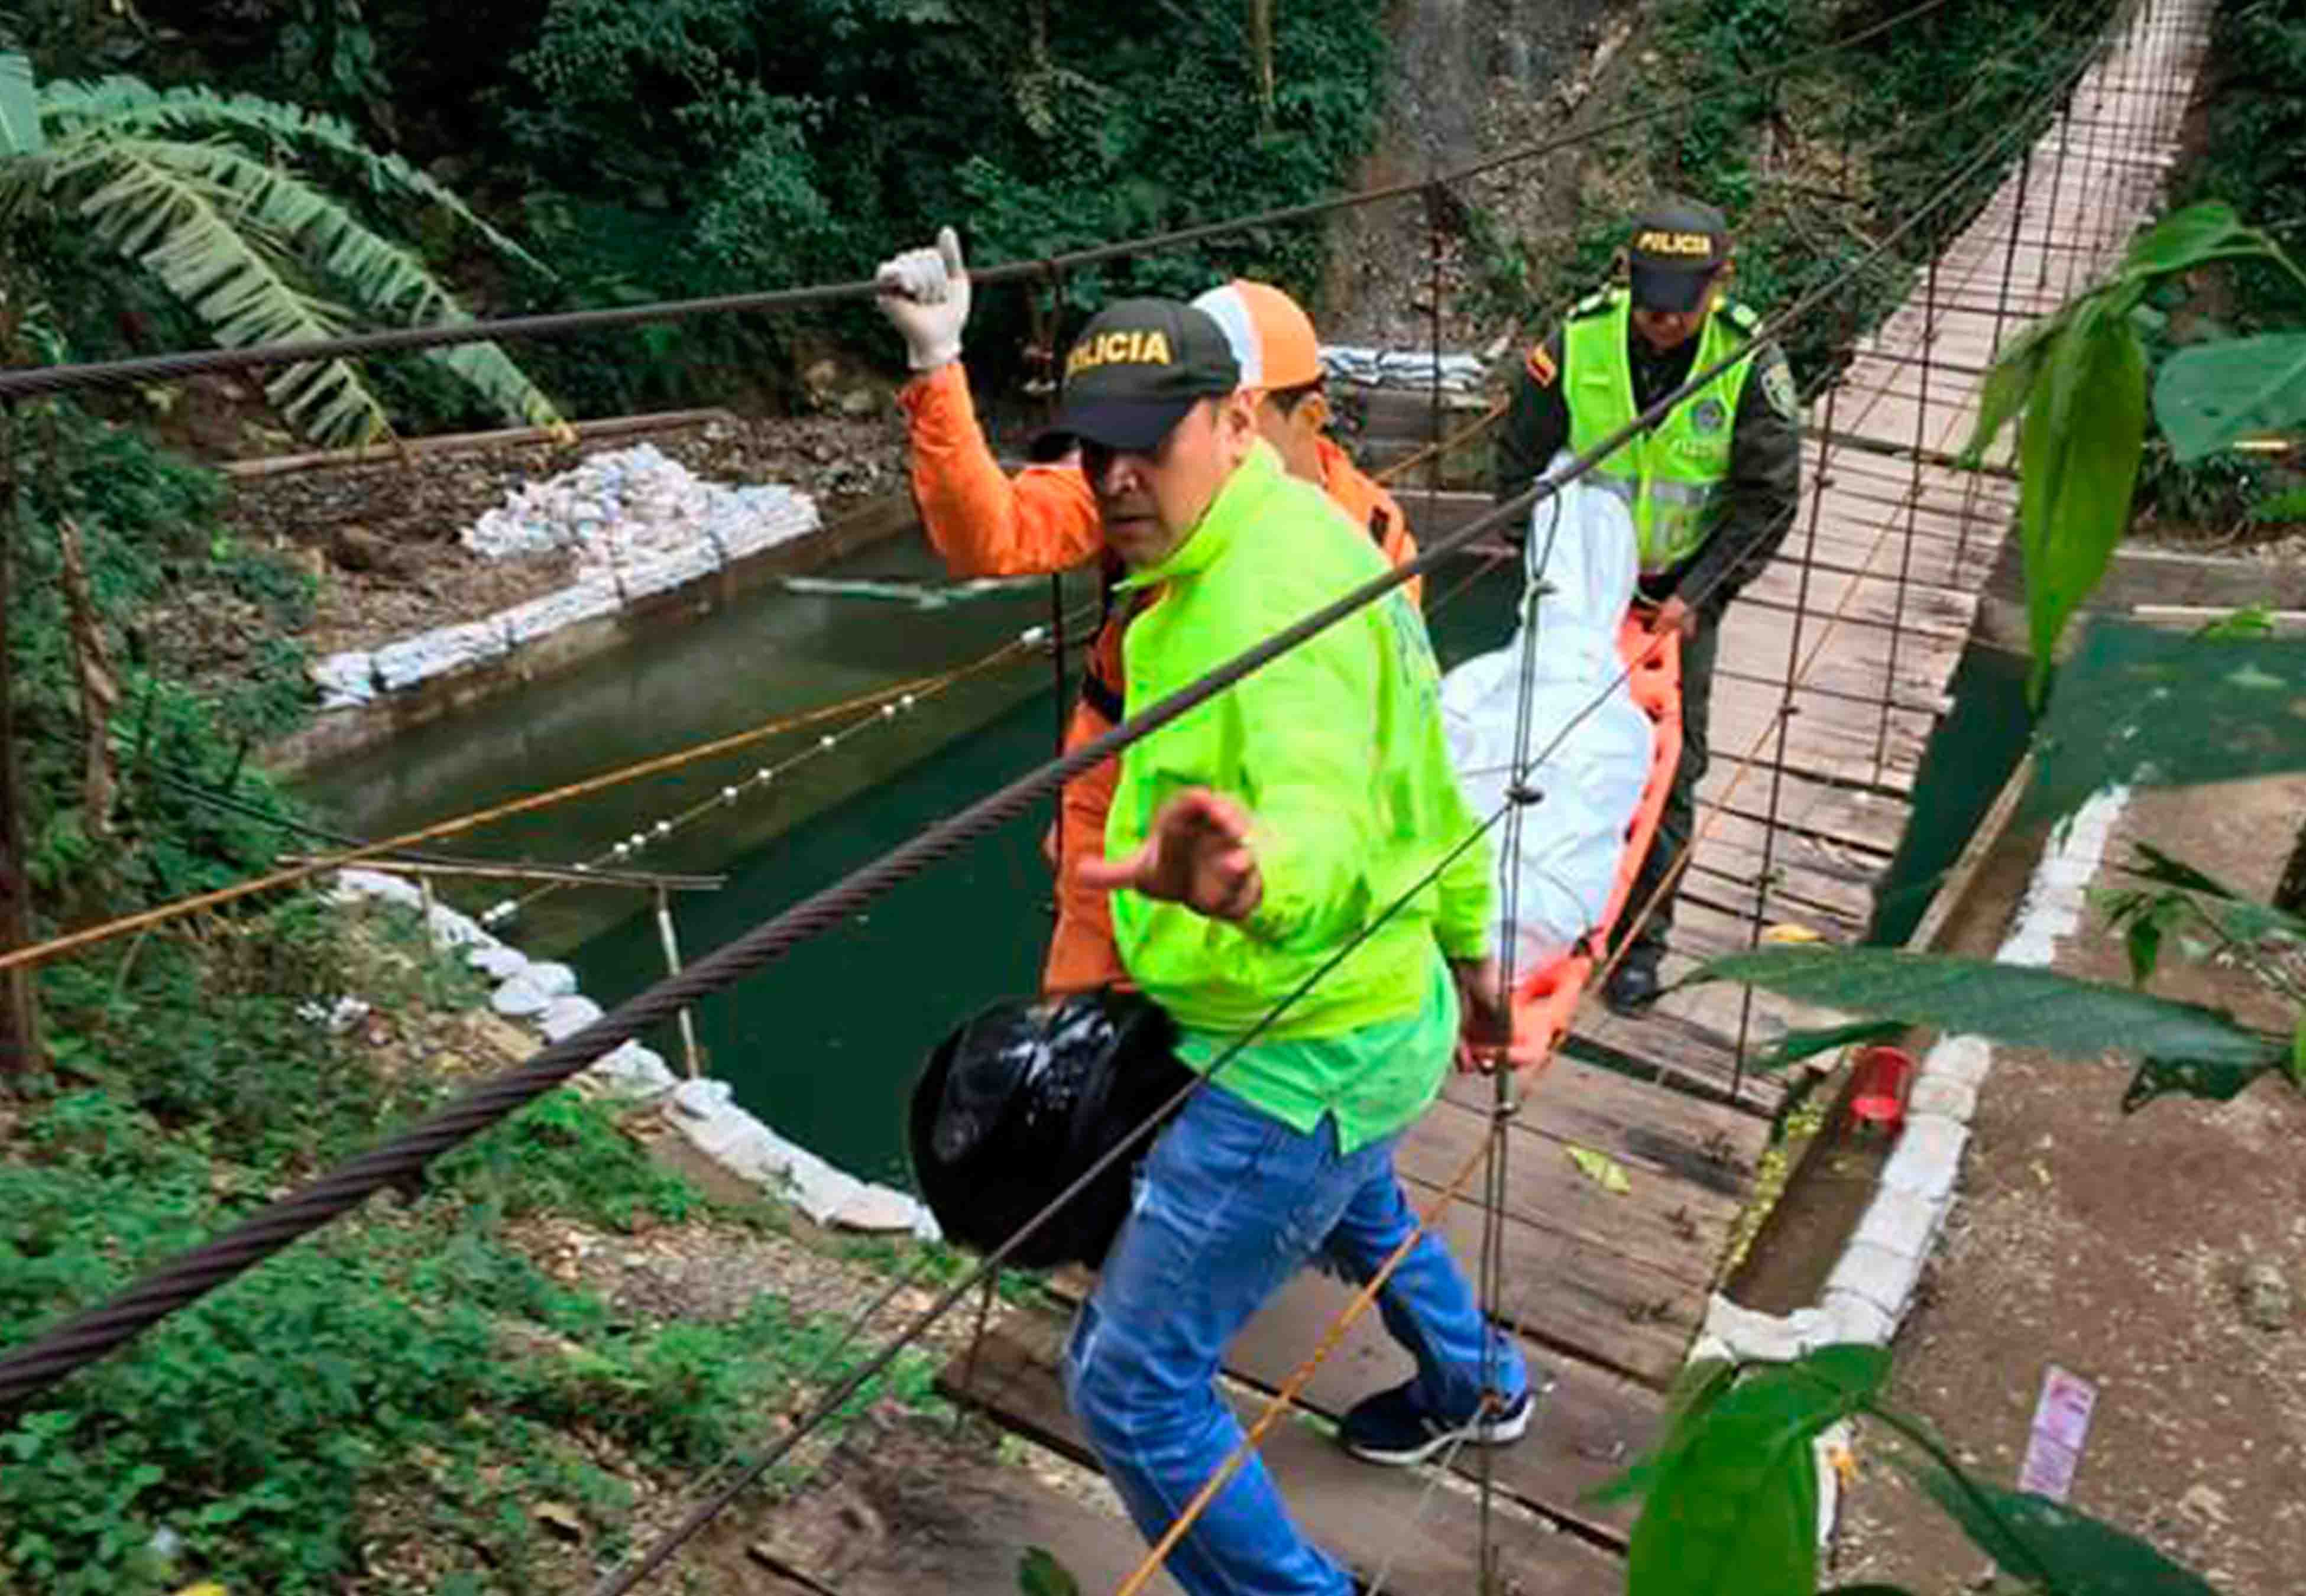  Mueren 11 personas al caer de puente en Colombia